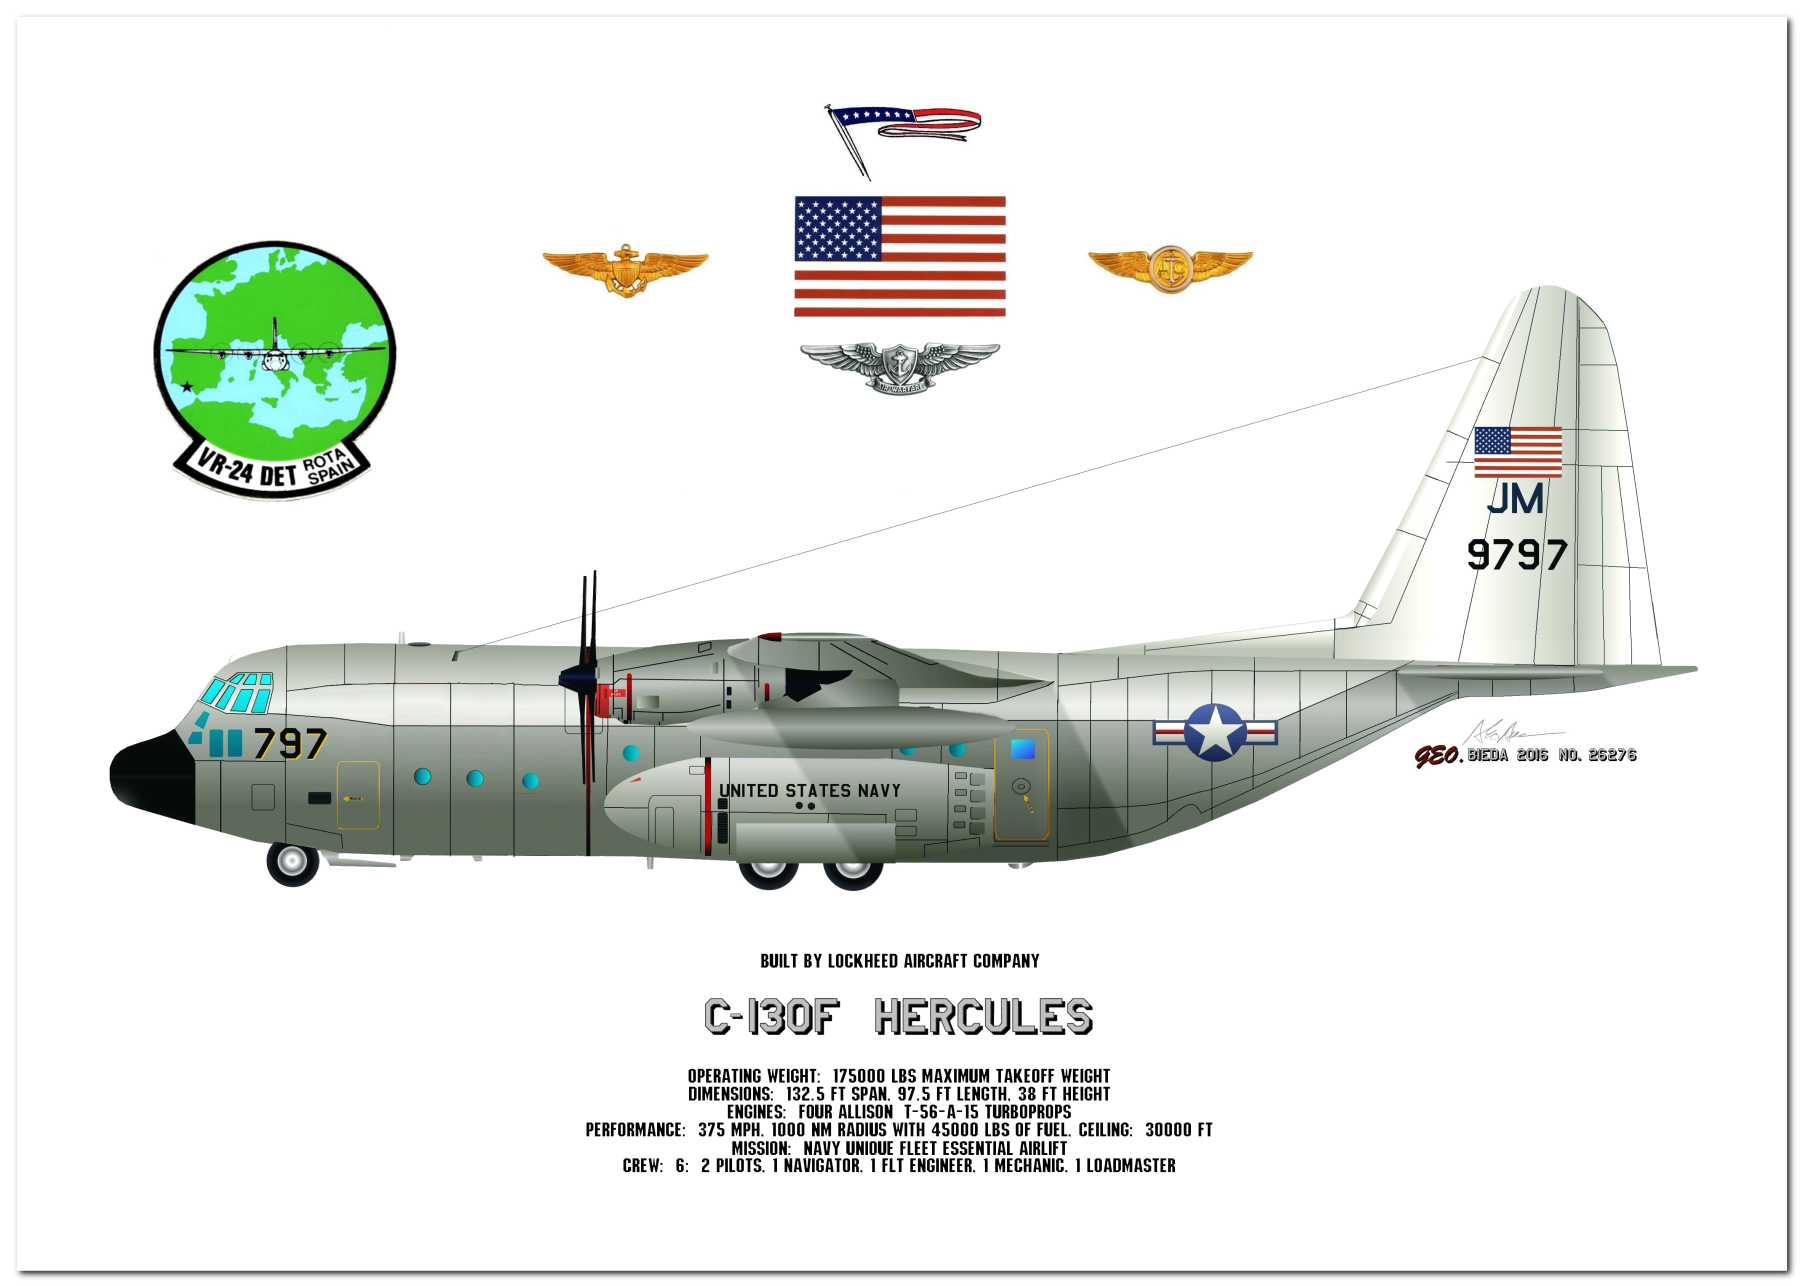 C-130 Hercules Profile Drawings by George Bieda